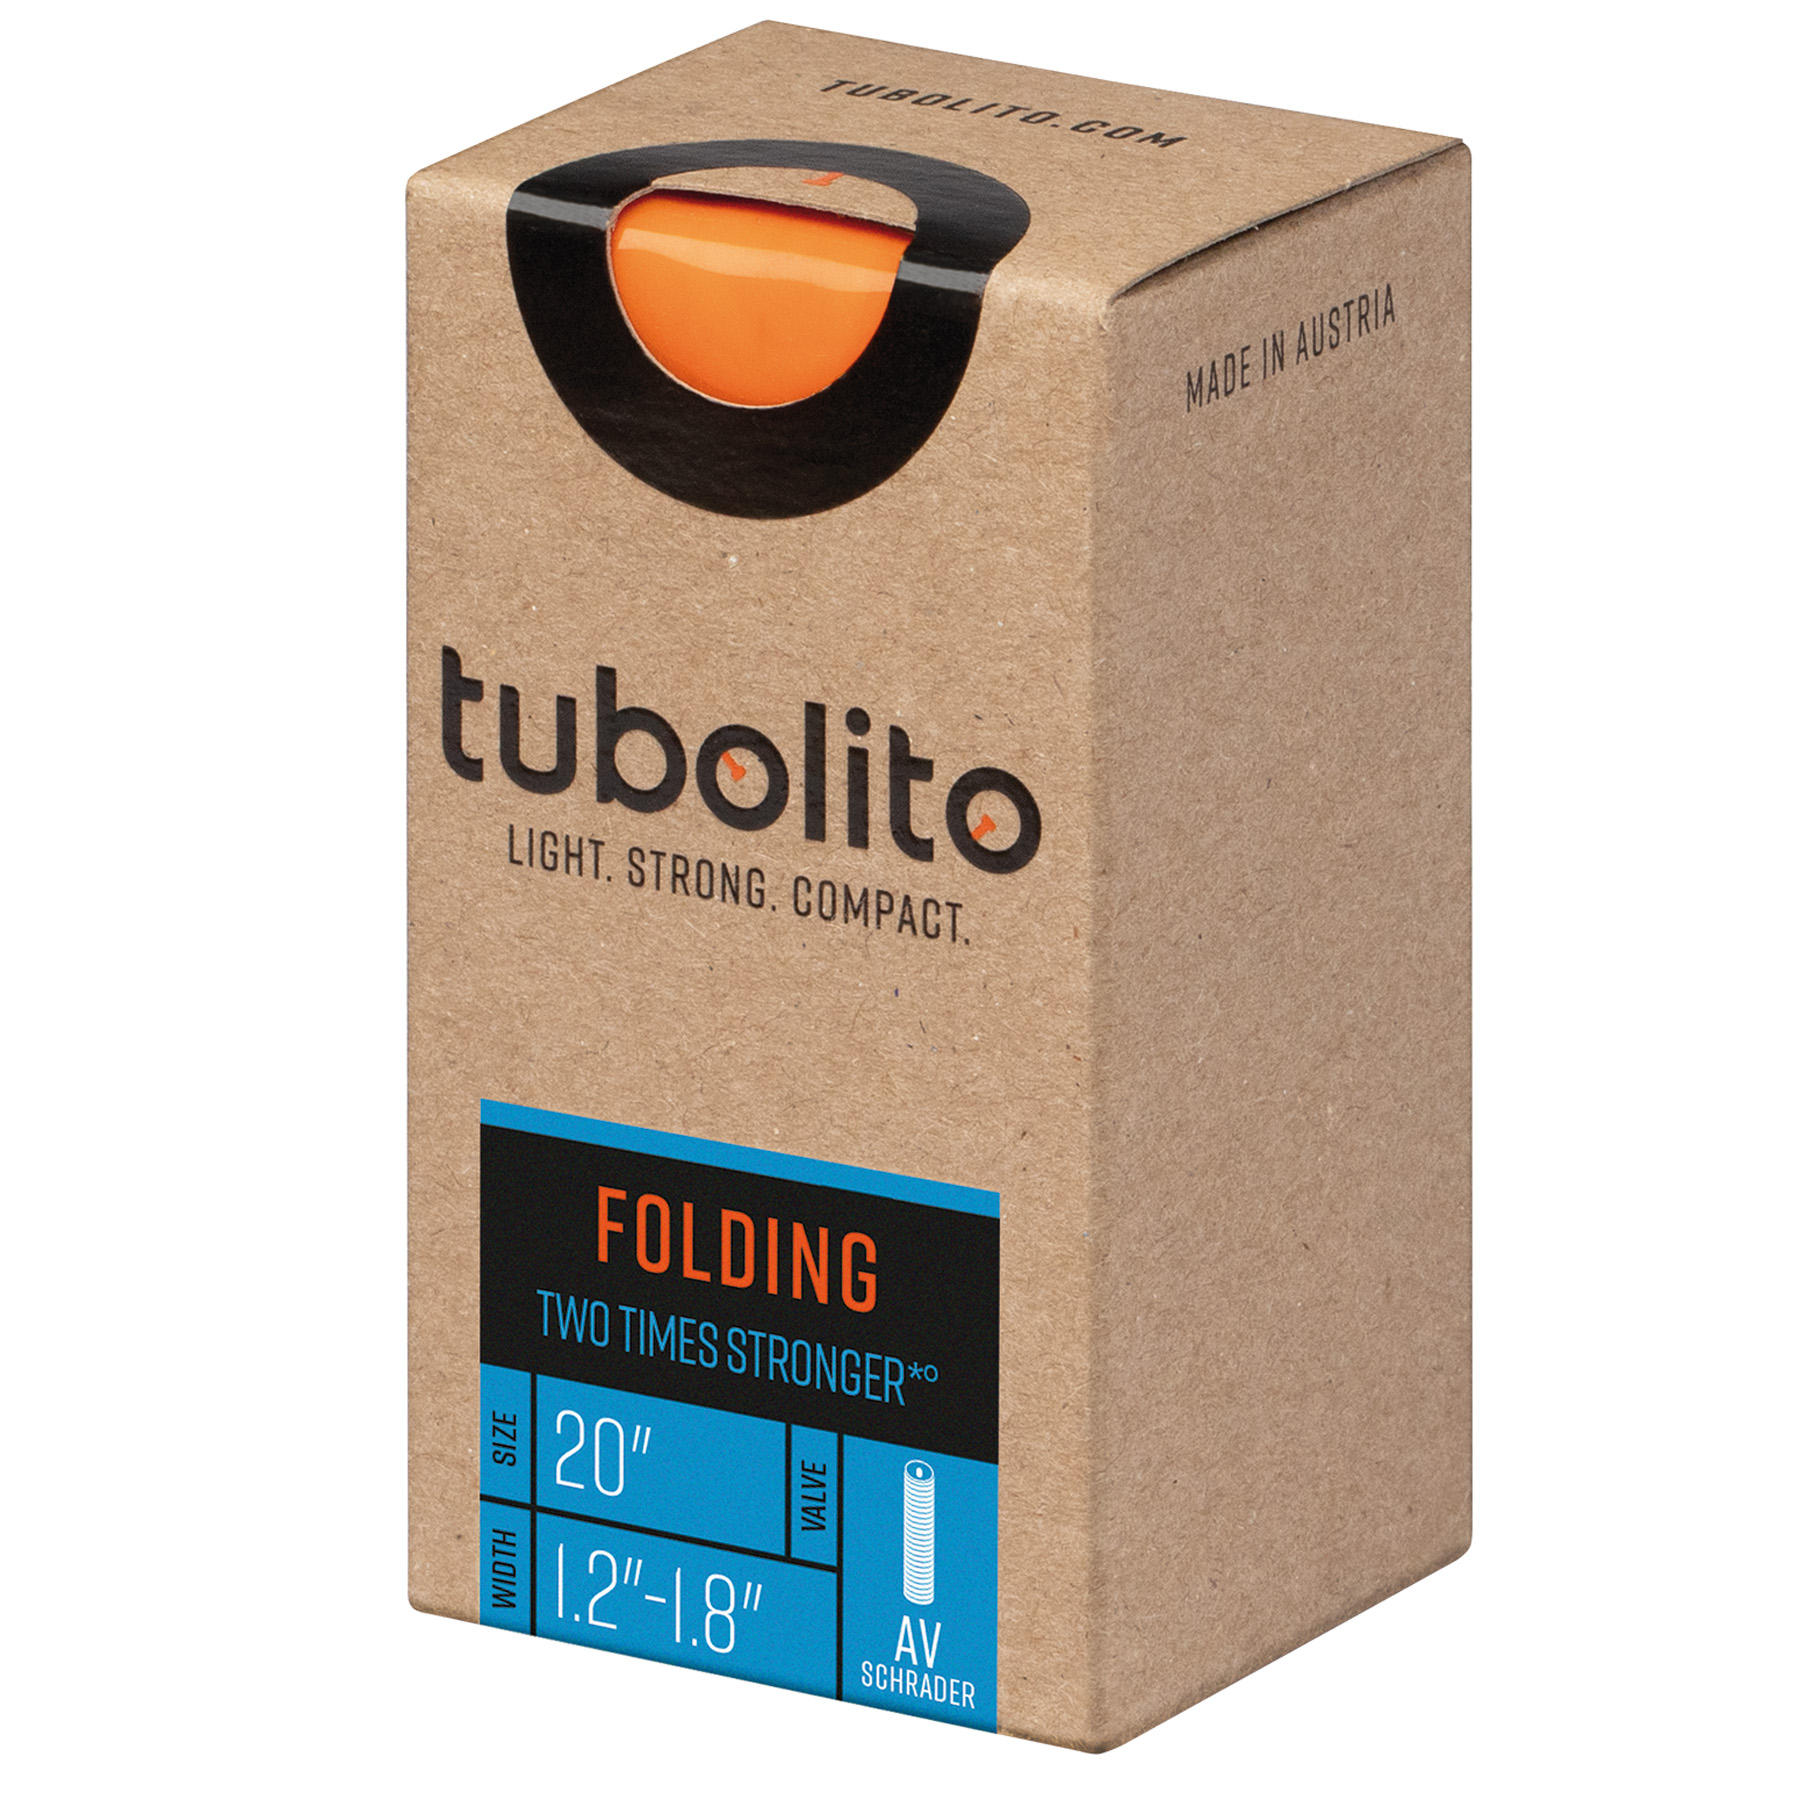 Immagine di Tubolito Tubo Foldingbike Camera d'Aria - 20"x1.2-1.8" - Schrader - 40mm